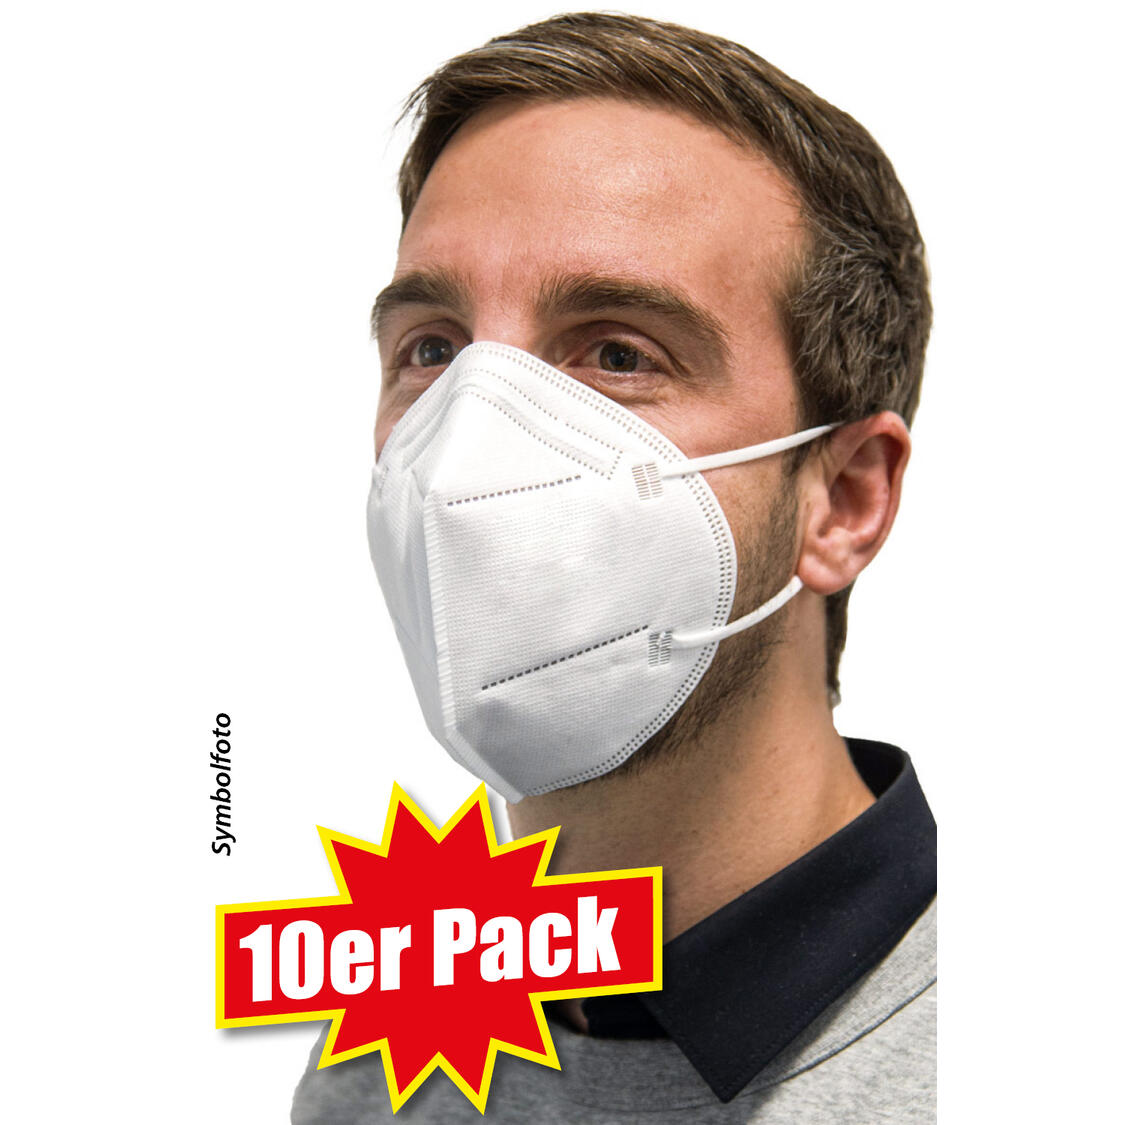 10er Pack FFP2-Schutzmasken